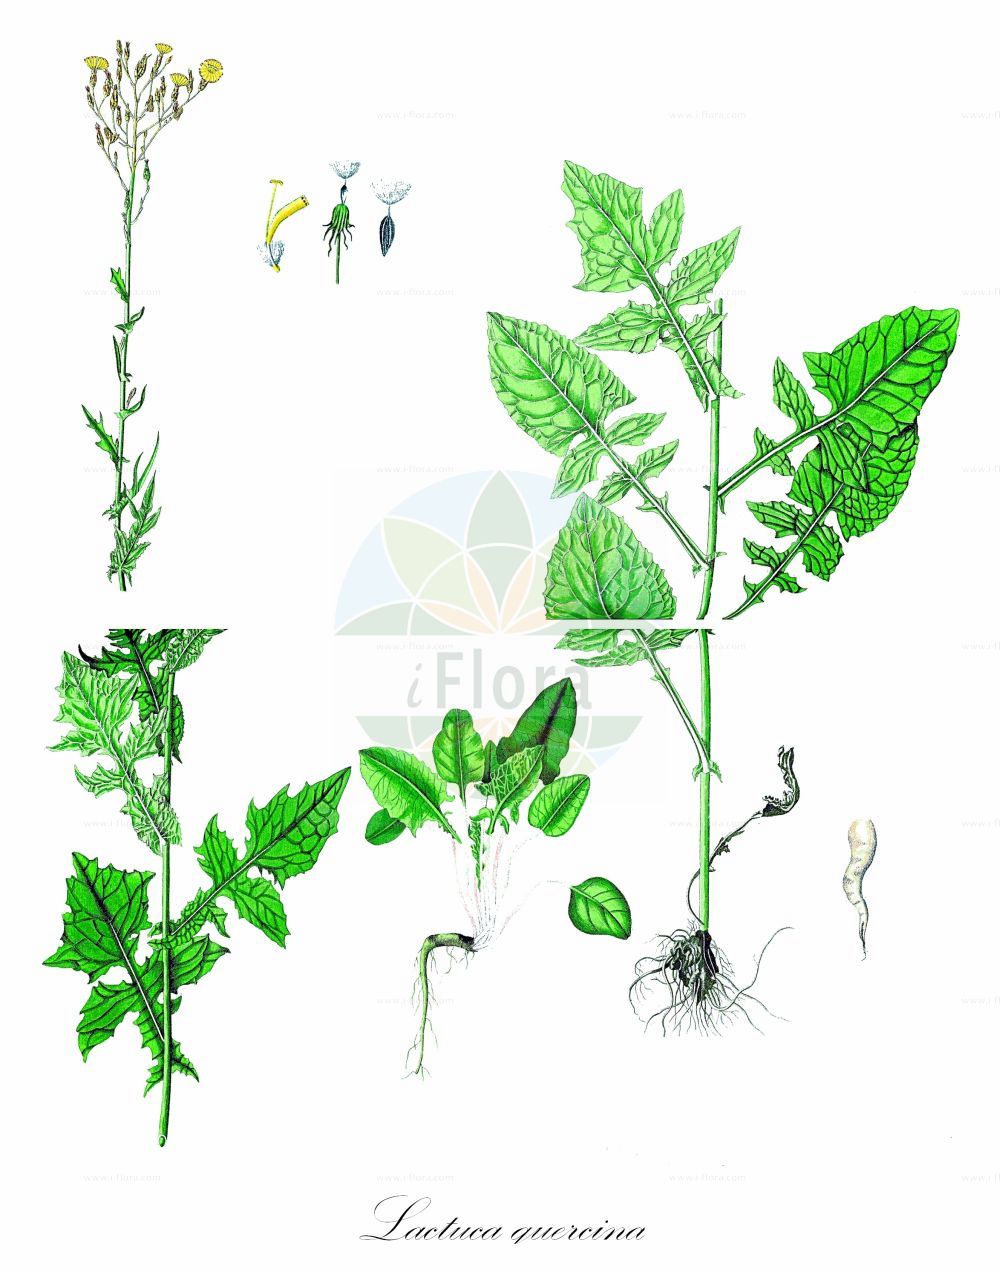 Historische Abbildung von Lactuca quercina (Eichen-Lattich - Oak Lettuce). Das Bild zeigt Blatt, Bluete, Frucht und Same. ---- Historical Drawing of Lactuca quercina (Eichen-Lattich - Oak Lettuce). The image is showing leaf, flower, fruit and seed.(Lactuca quercina,Eichen-Lattich,Oak Lettuce,Lactuca altissima,Lactuca chaixii,Lactuca lipskyi,Lactuca quercina,Lactuca sagittata,Lactuca stricta,Mulgedium quercinum,Eichen-Lattich,Oak Lettuce,Lactuca,Lattich,Lettuce,Asteraceae,Korbblütengewächse,Daisy family,Blatt,Bluete,Frucht,Same,leaf,flower,fruit,seed,Waldstein-Wartenberg & Kitaibel (1799-1812))